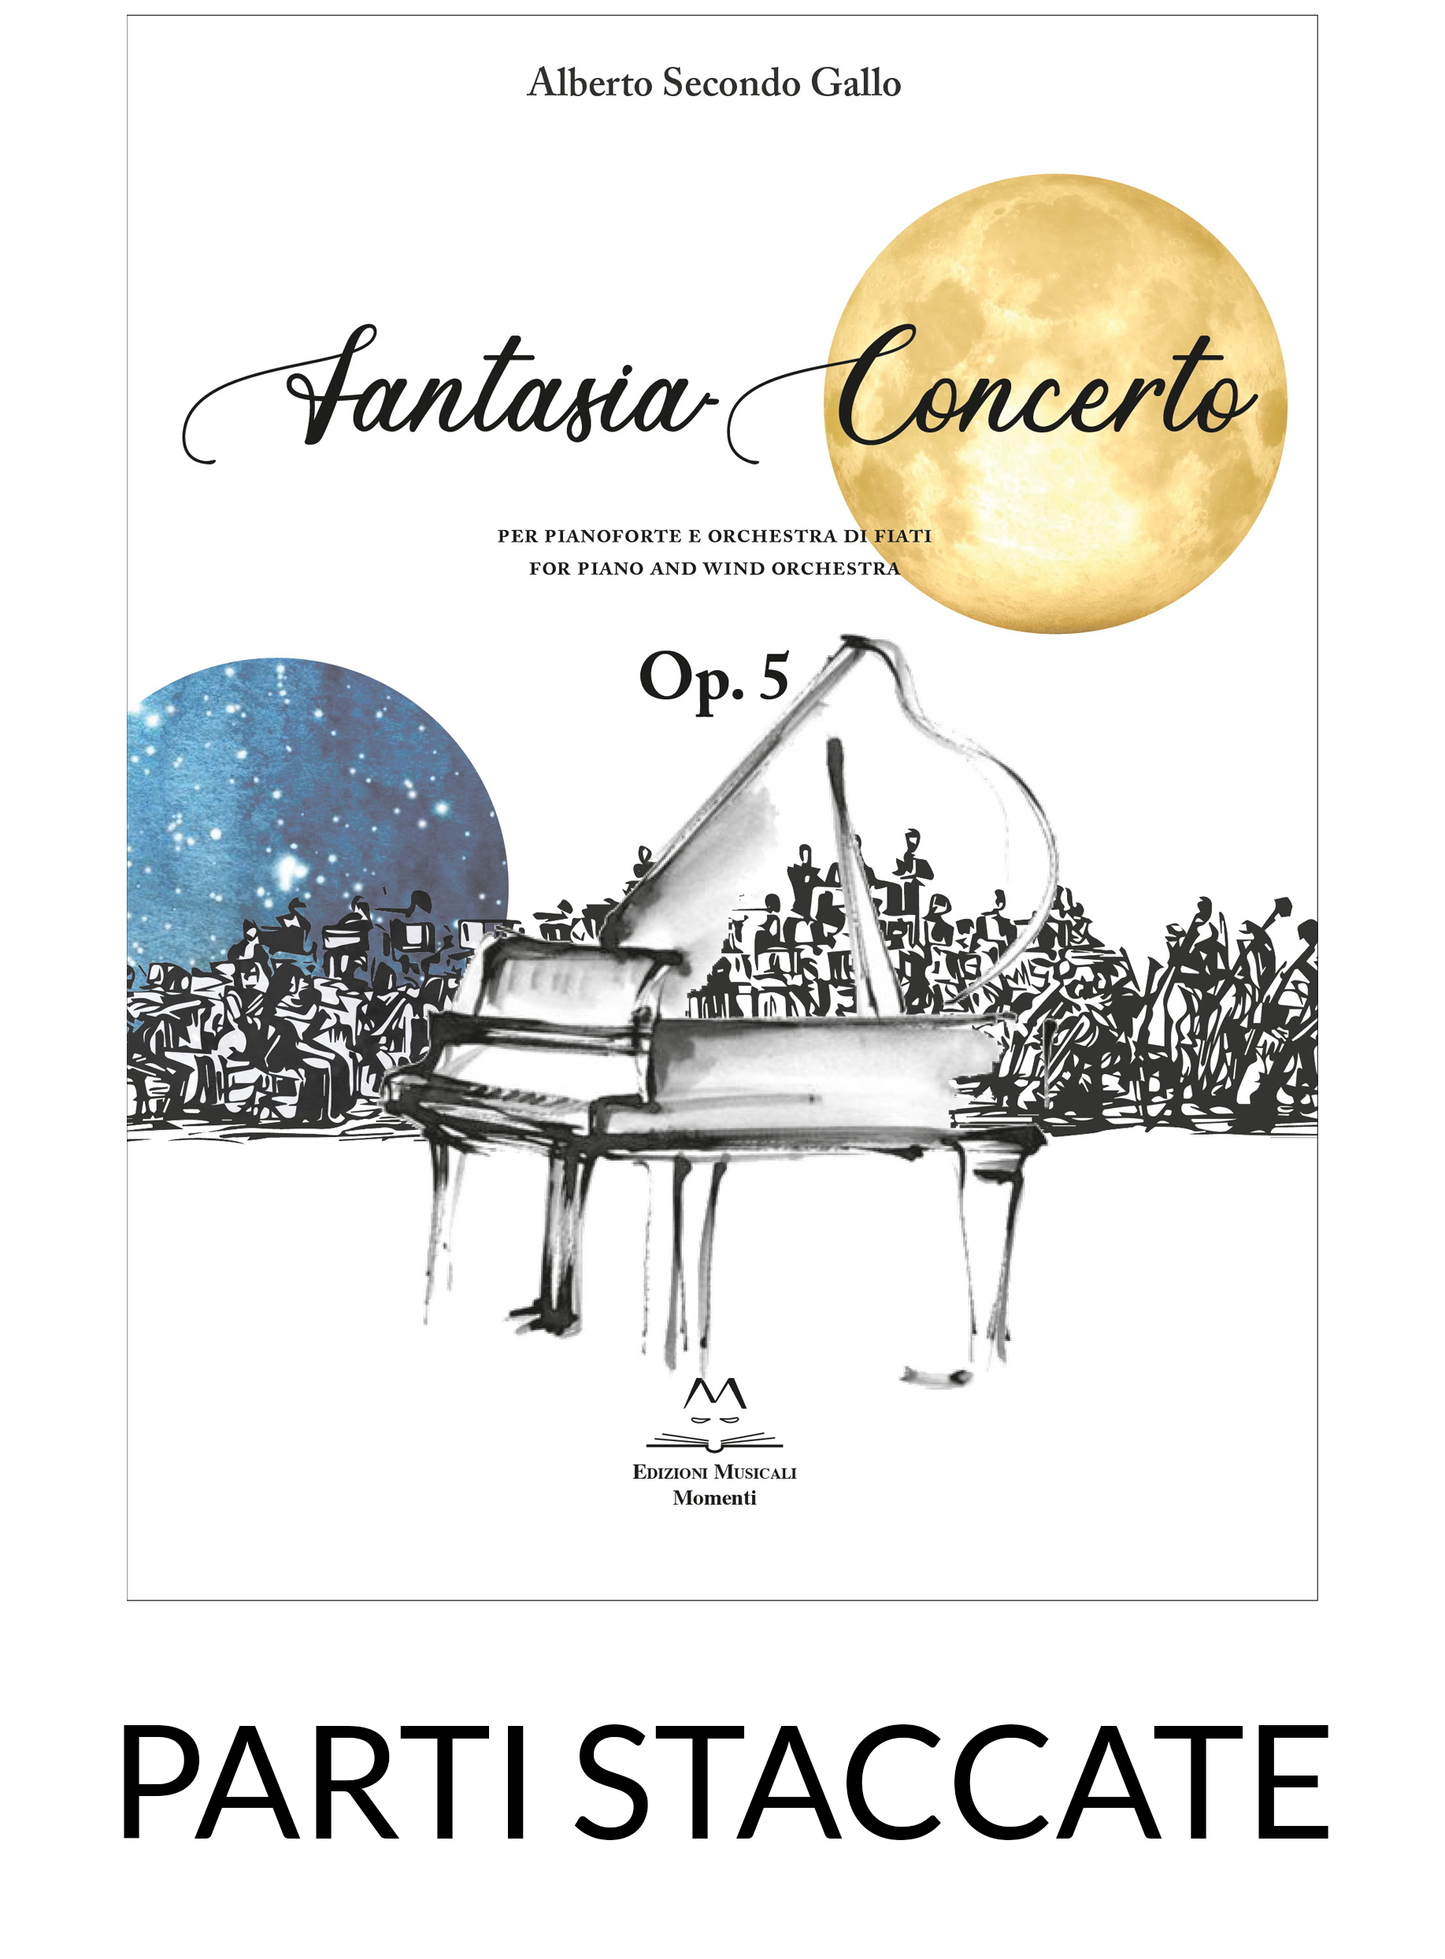 Fantasia Concerto per Pianoforte e Orchestra di fiati di Alberto Secondo Gallo | Parti staccate